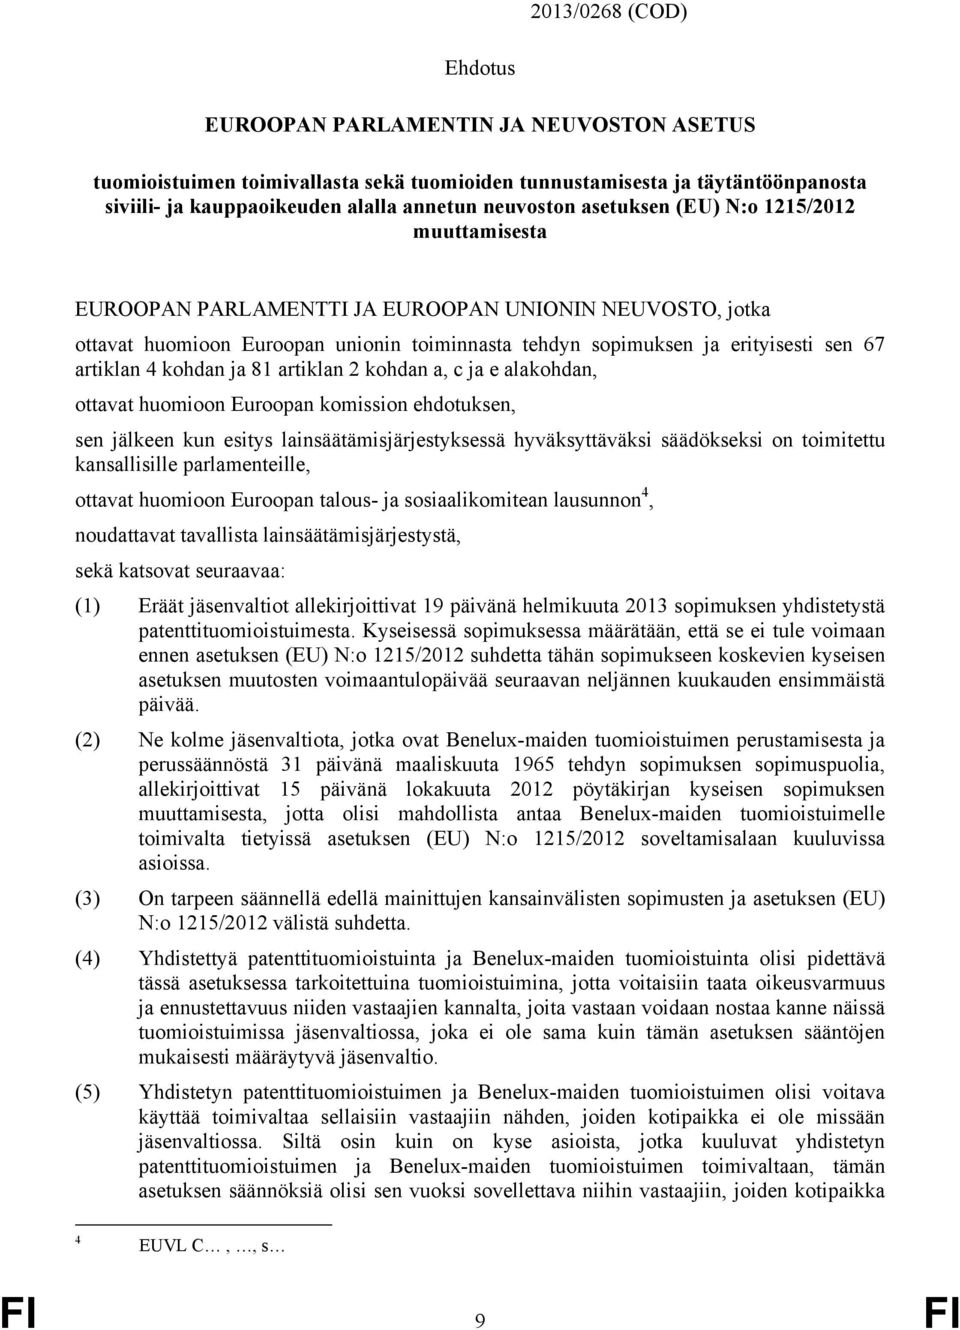 kohdan ja 81 artiklan 2 kohdan a, c ja e alakohdan, ottavat huomioon Euroopan komission ehdotuksen, sen jälkeen kun esitys lainsäätämisjärjestyksessä hyväksyttäväksi säädökseksi on toimitettu